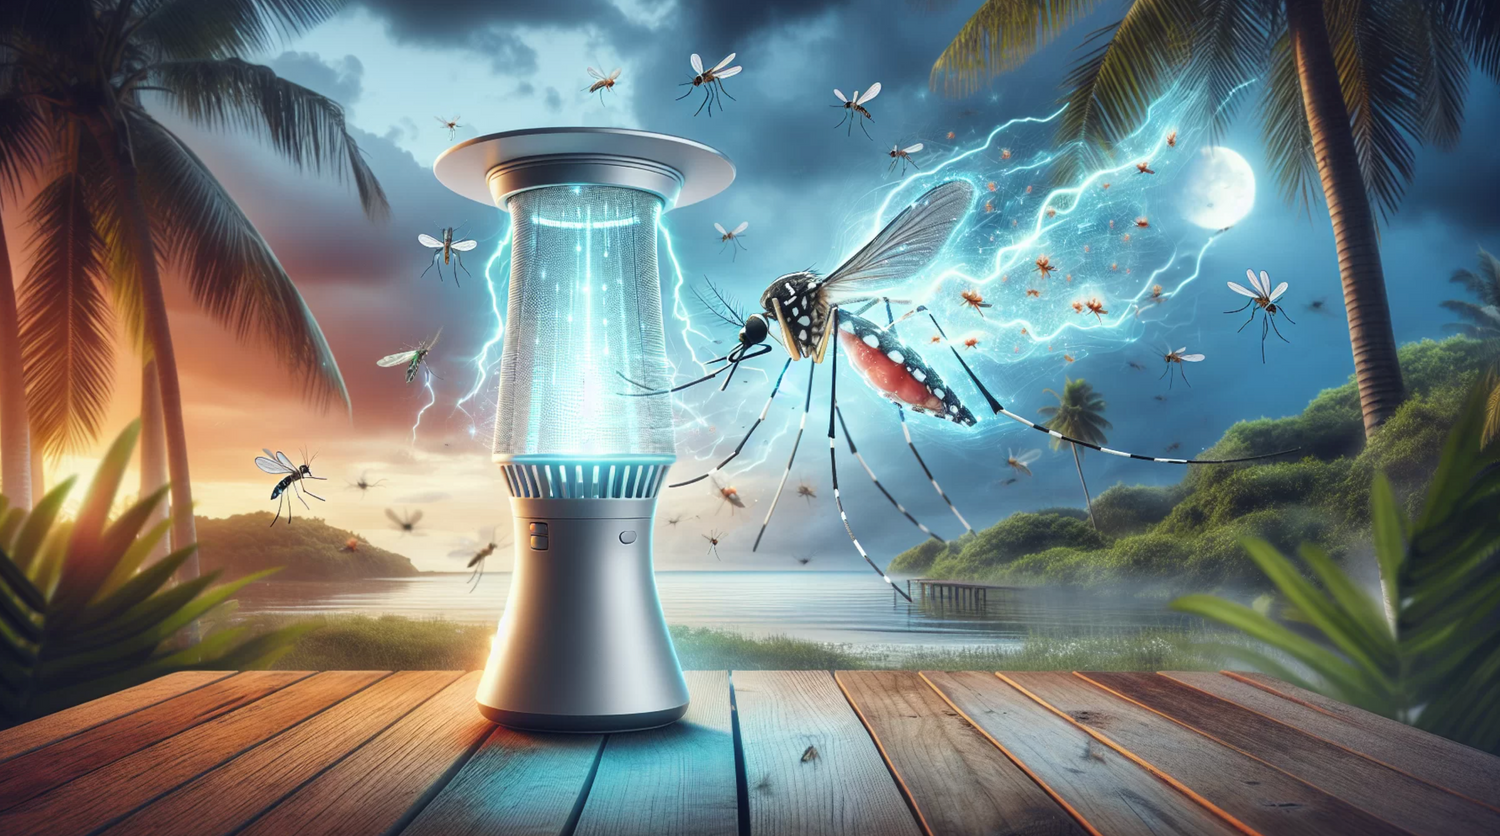 Comment fonctionne la lampe anti moustique pour protéger efficacement ?